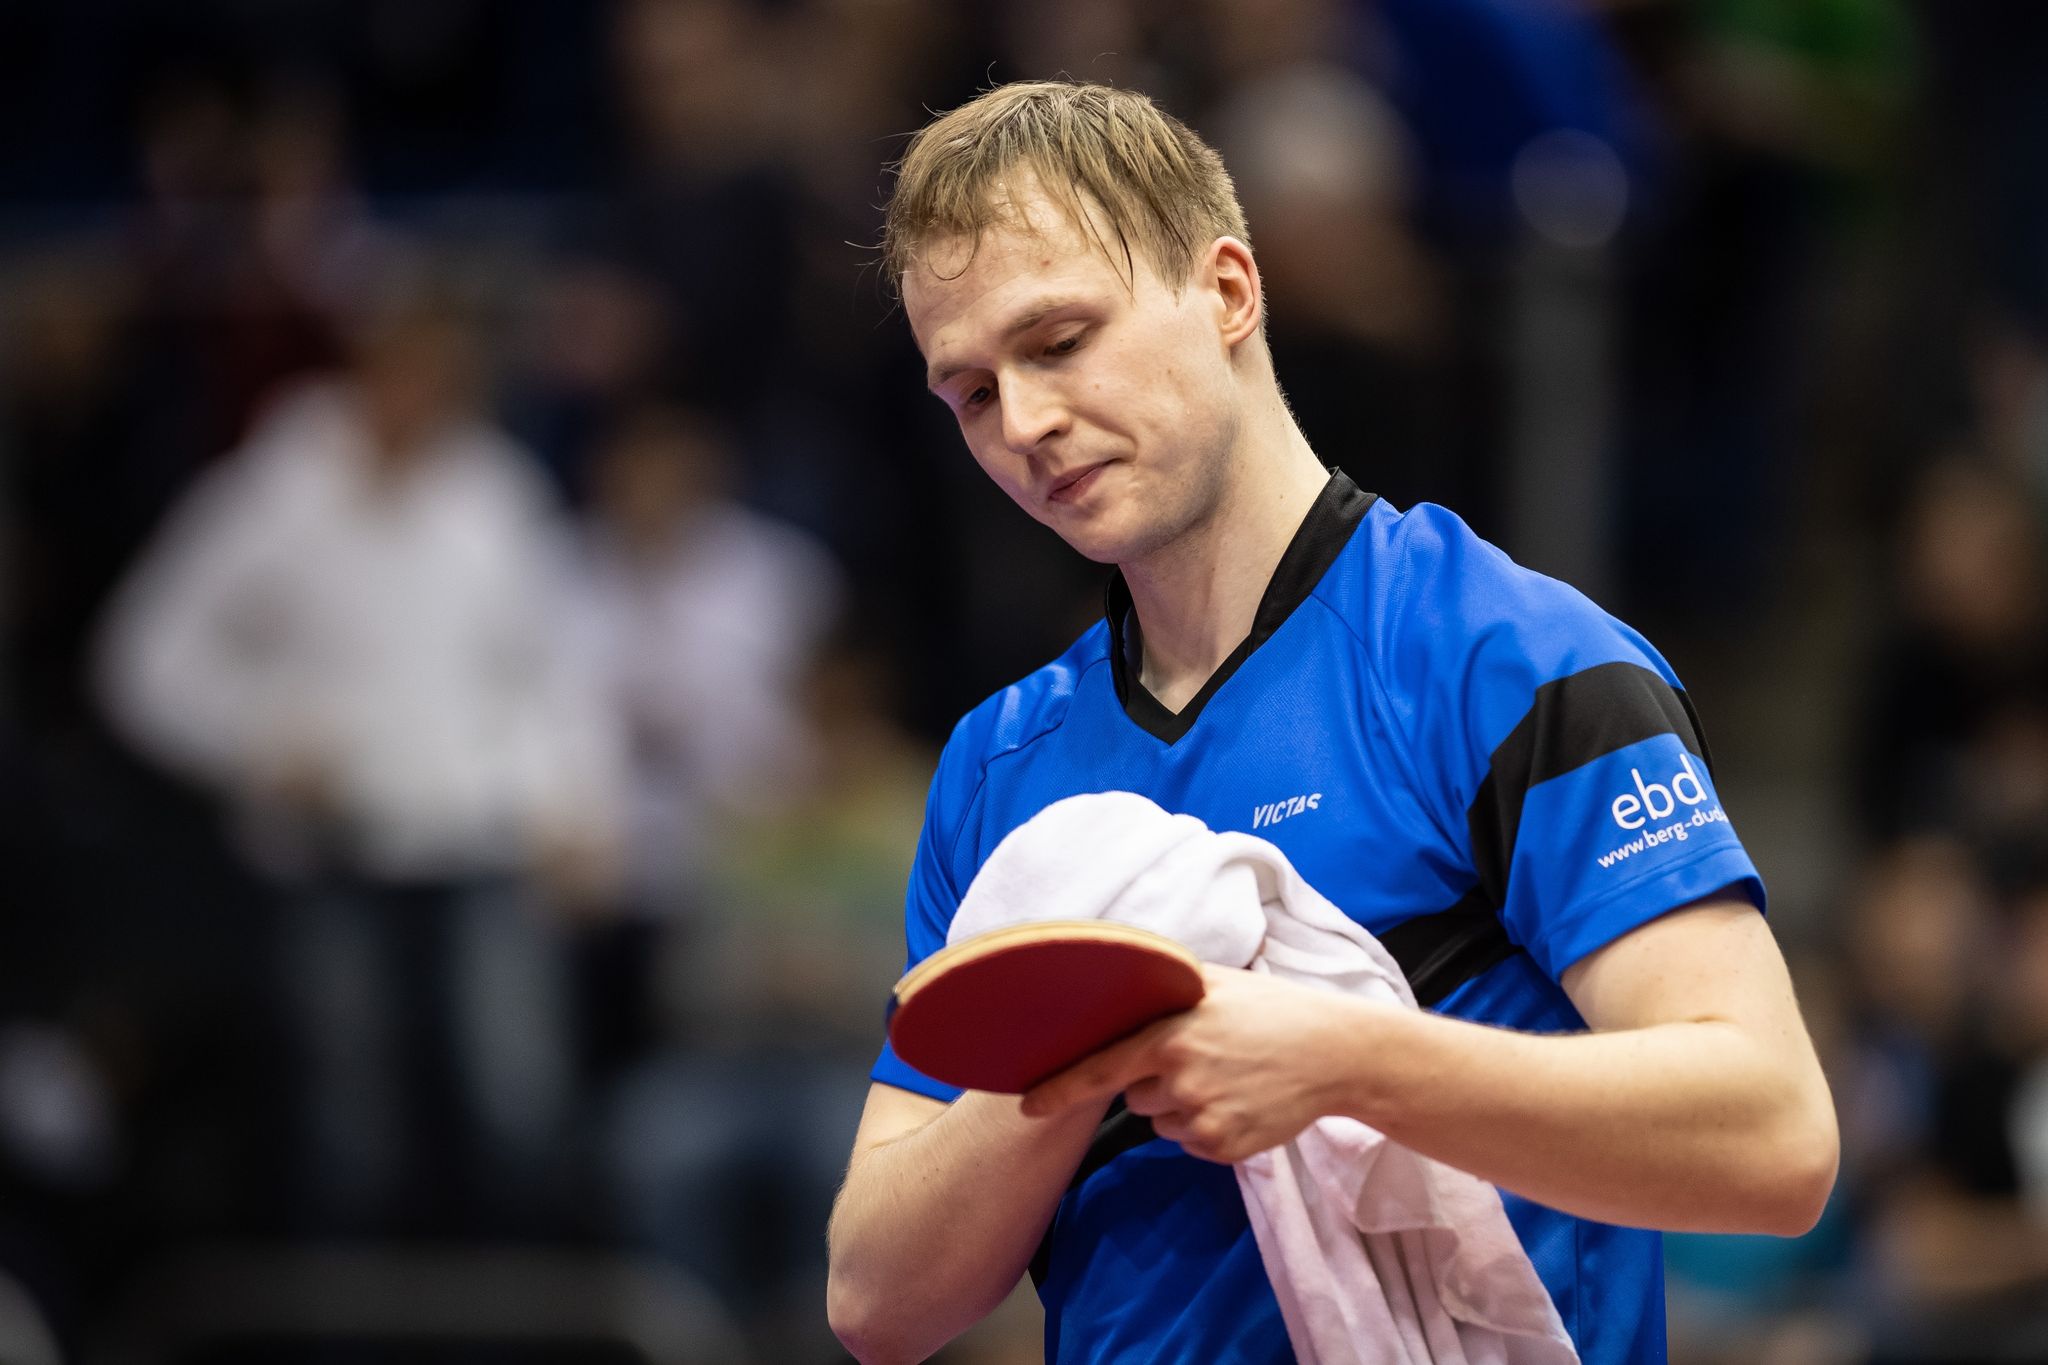 Tischtennis-Ass Benedikt Duda ärgert sich über einen falsch-positiven Corona-Test.